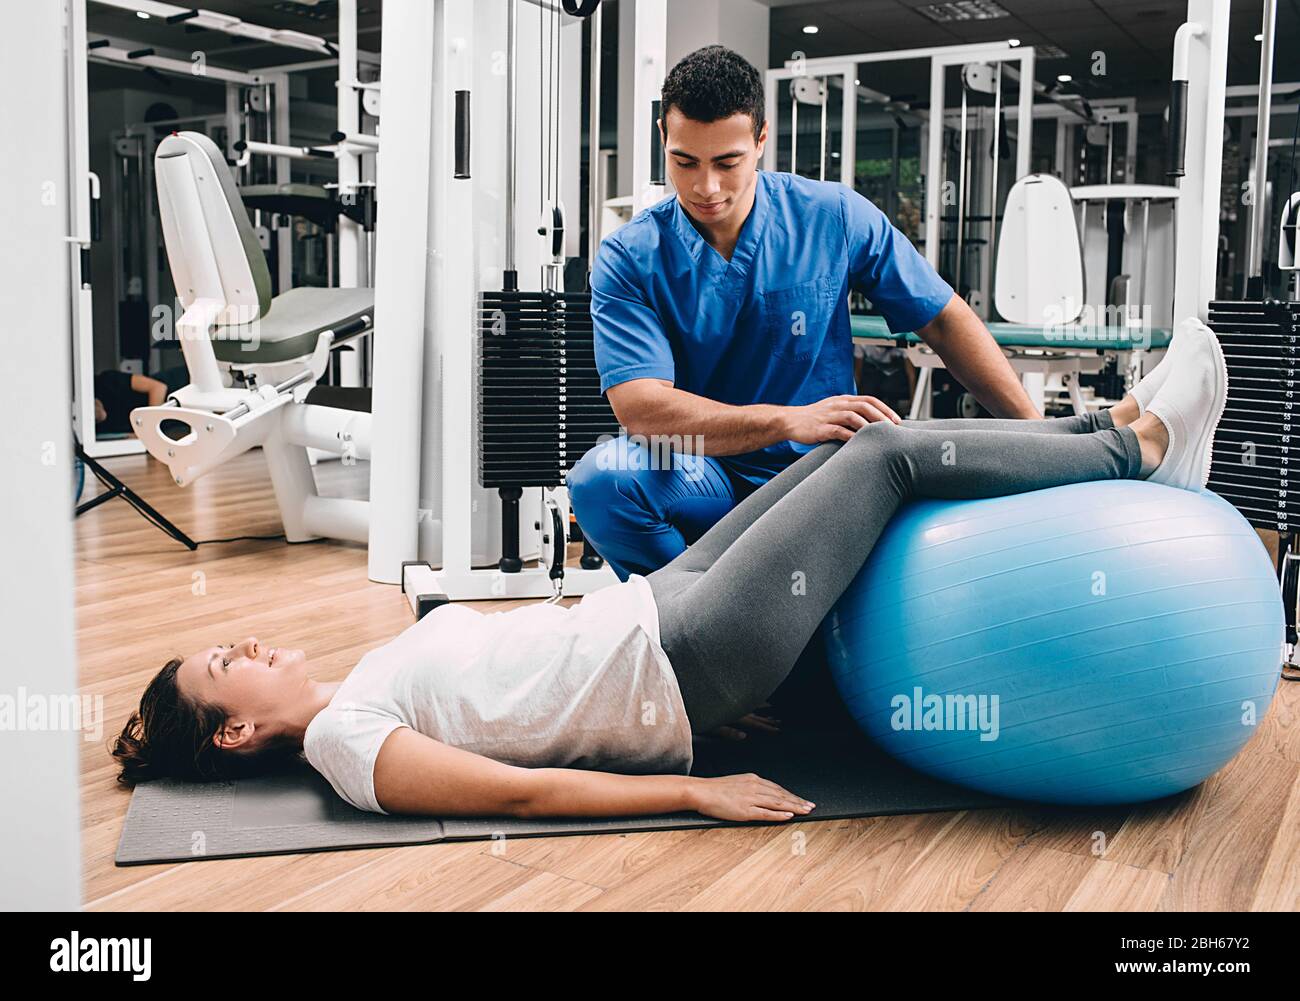 Physiotherapeut hält einen Fitnessball, der dem Patienten hilft, Übungen für den unteren Rücken zu machen. Schmerzen im unteren Rücken. Gesundheitsturnsport Stockfoto